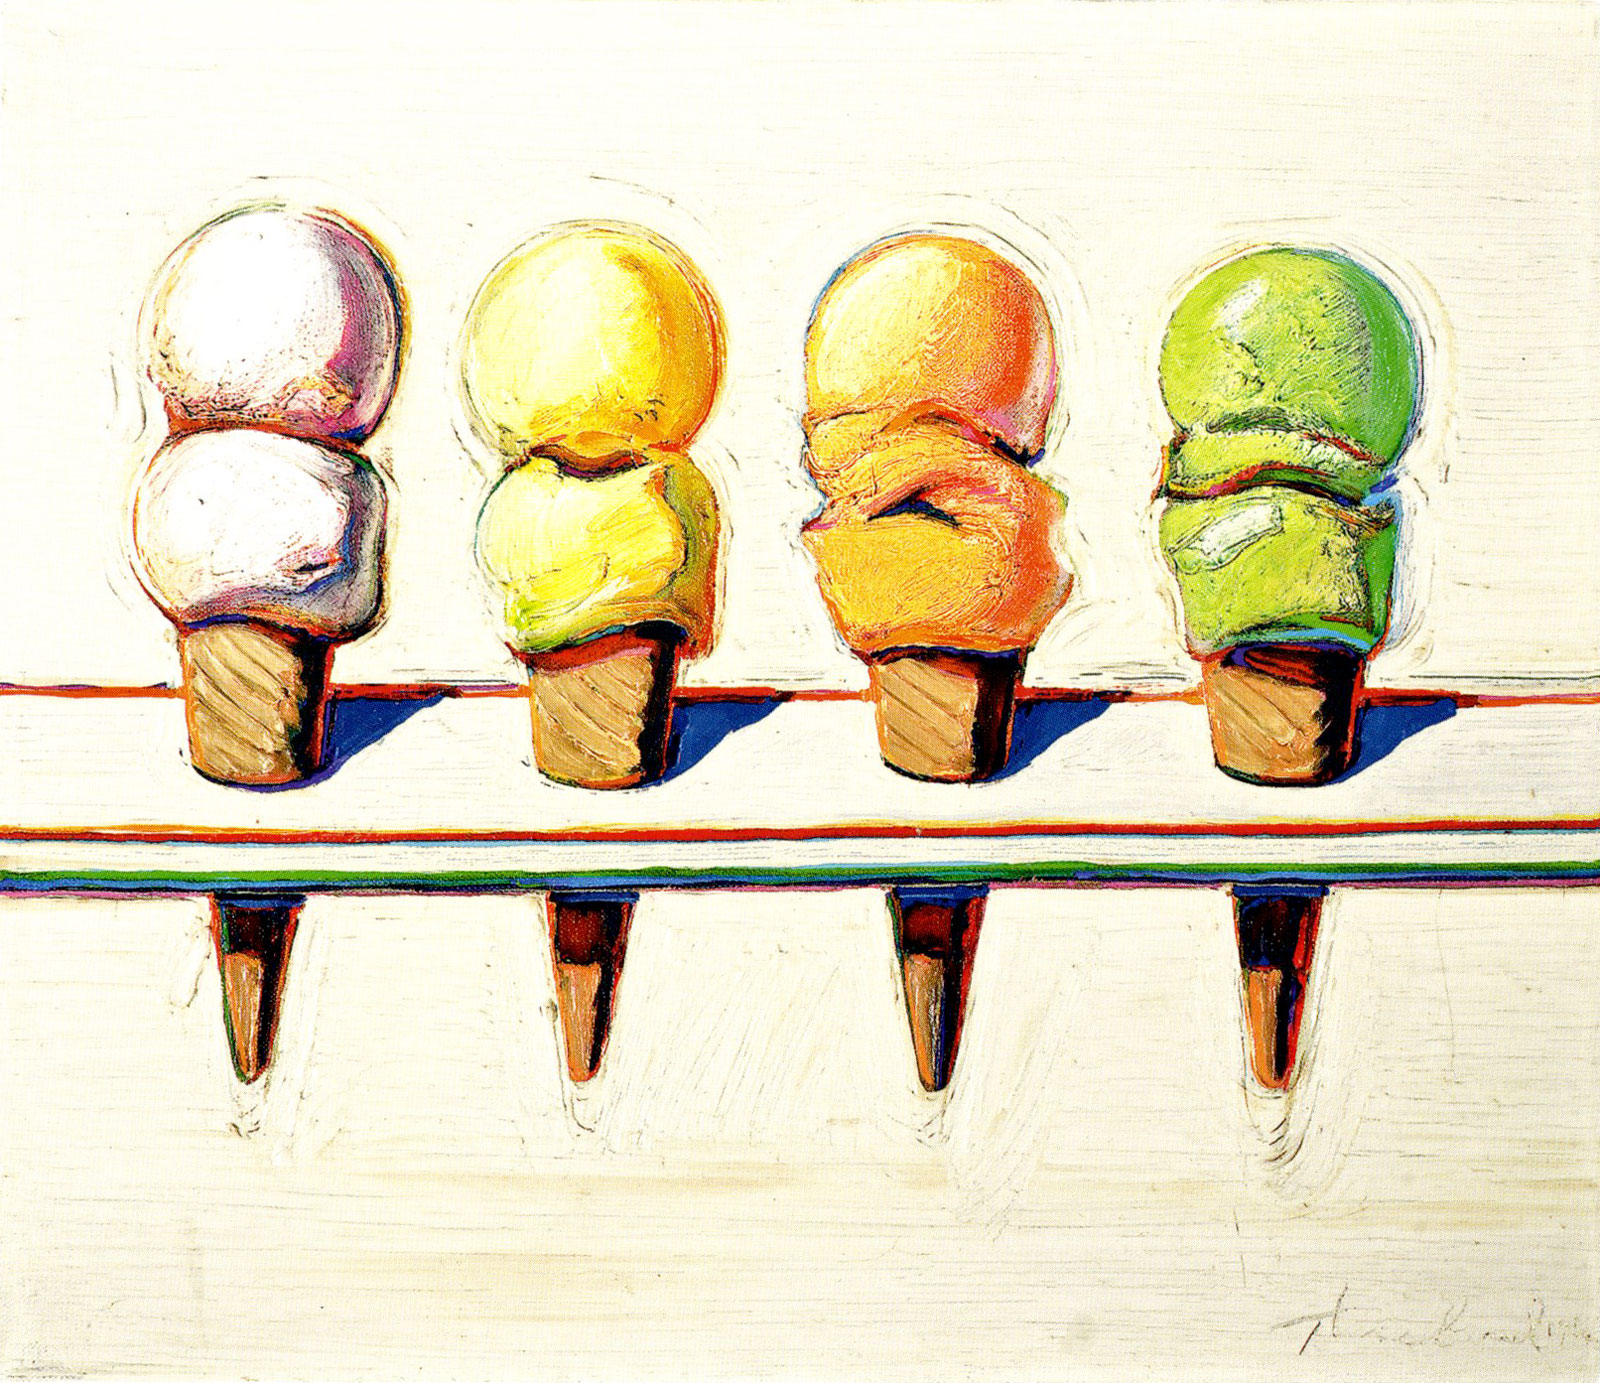 Wayne Thiebaud: Four Ice Cream Cones, 1964